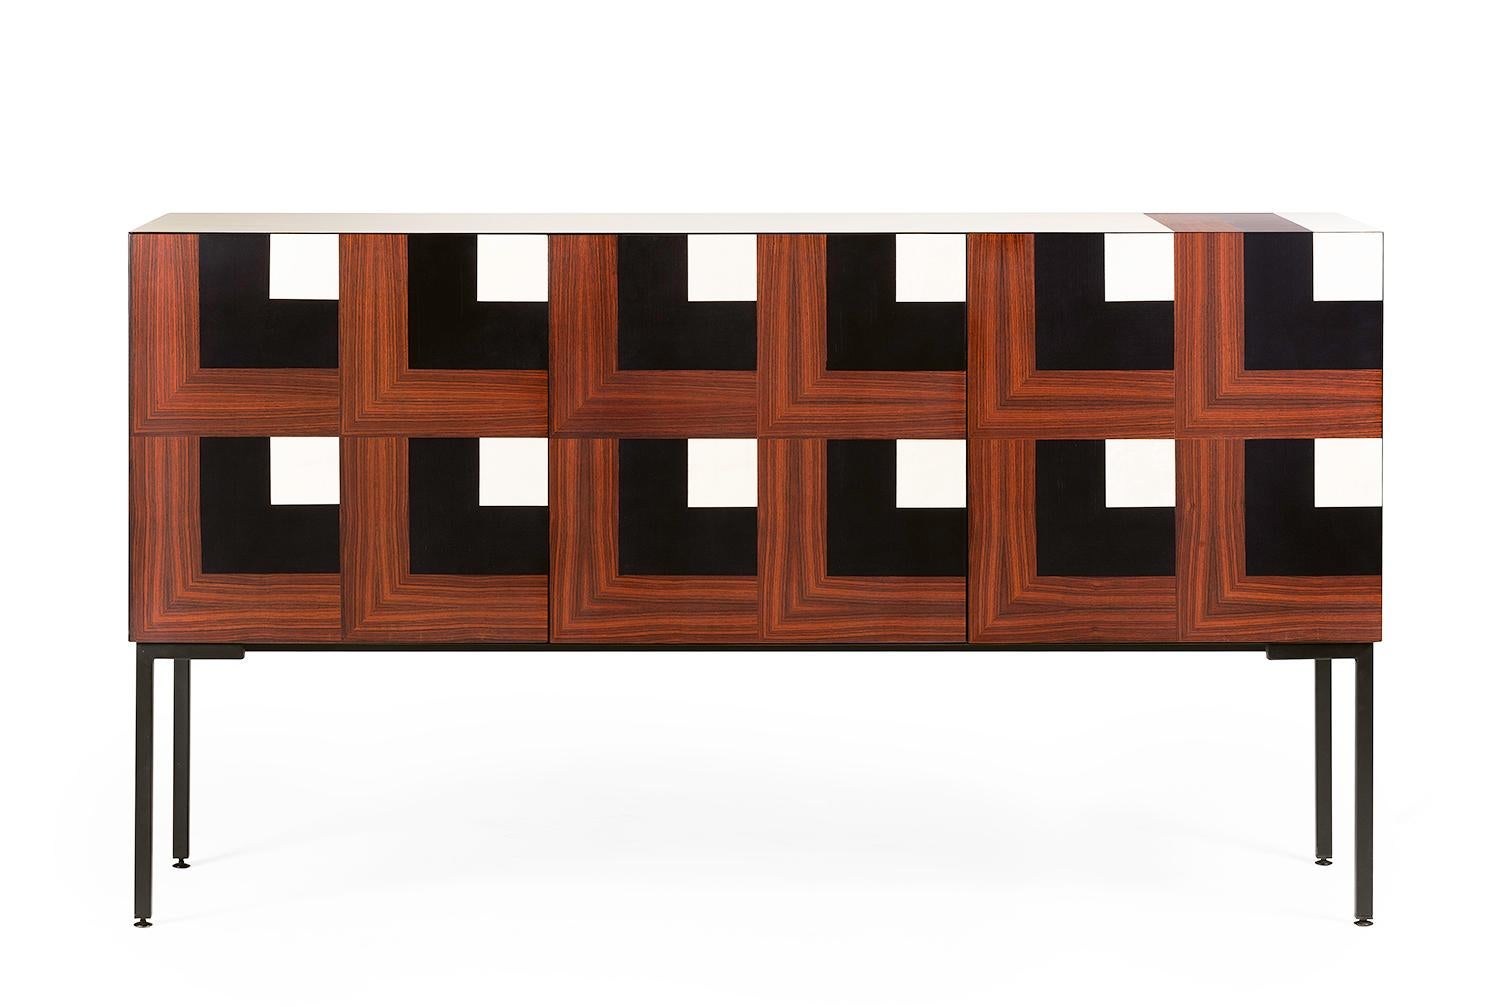 Combinés par les mains des maîtres ébénistes d'Hebanon, les bois sont habilement juxtaposés pour créer une incrustation optique raffinée. L'illusion de perspective frontale est renforcée par la coupe à 45° des portes et de la structure qui permet de